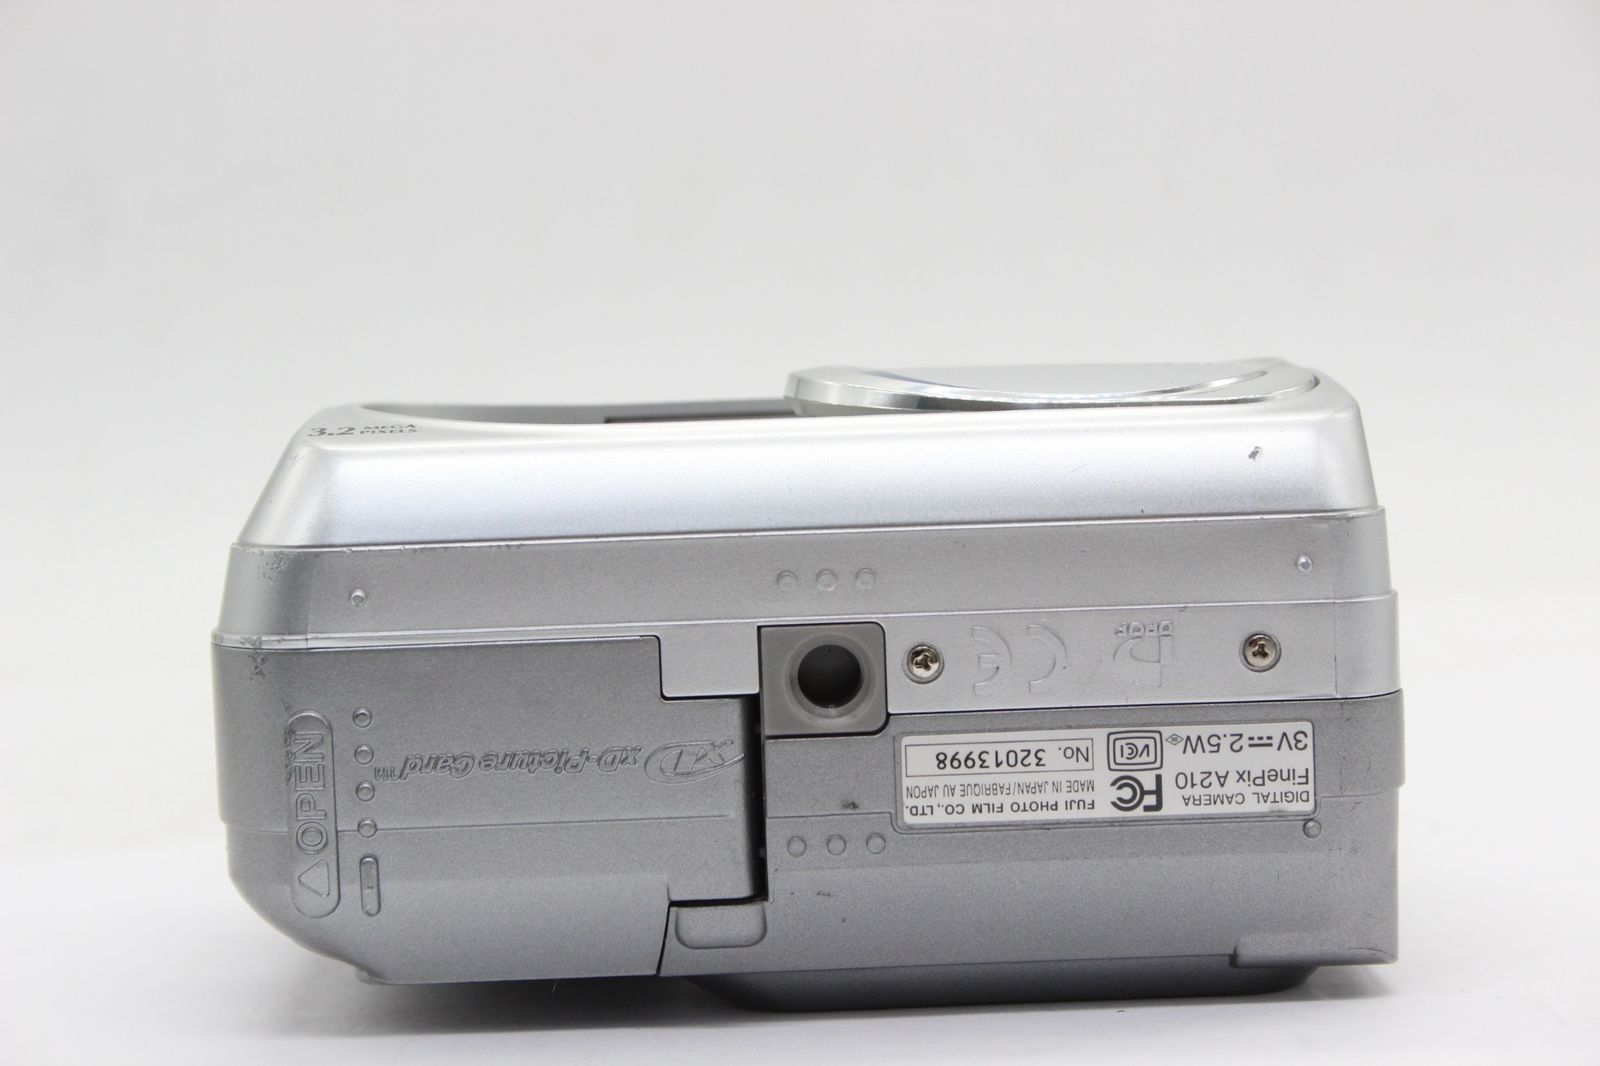 返品保証】 【便利な単三電池で使用可】フジフィルム Fujifilm Finepix ...